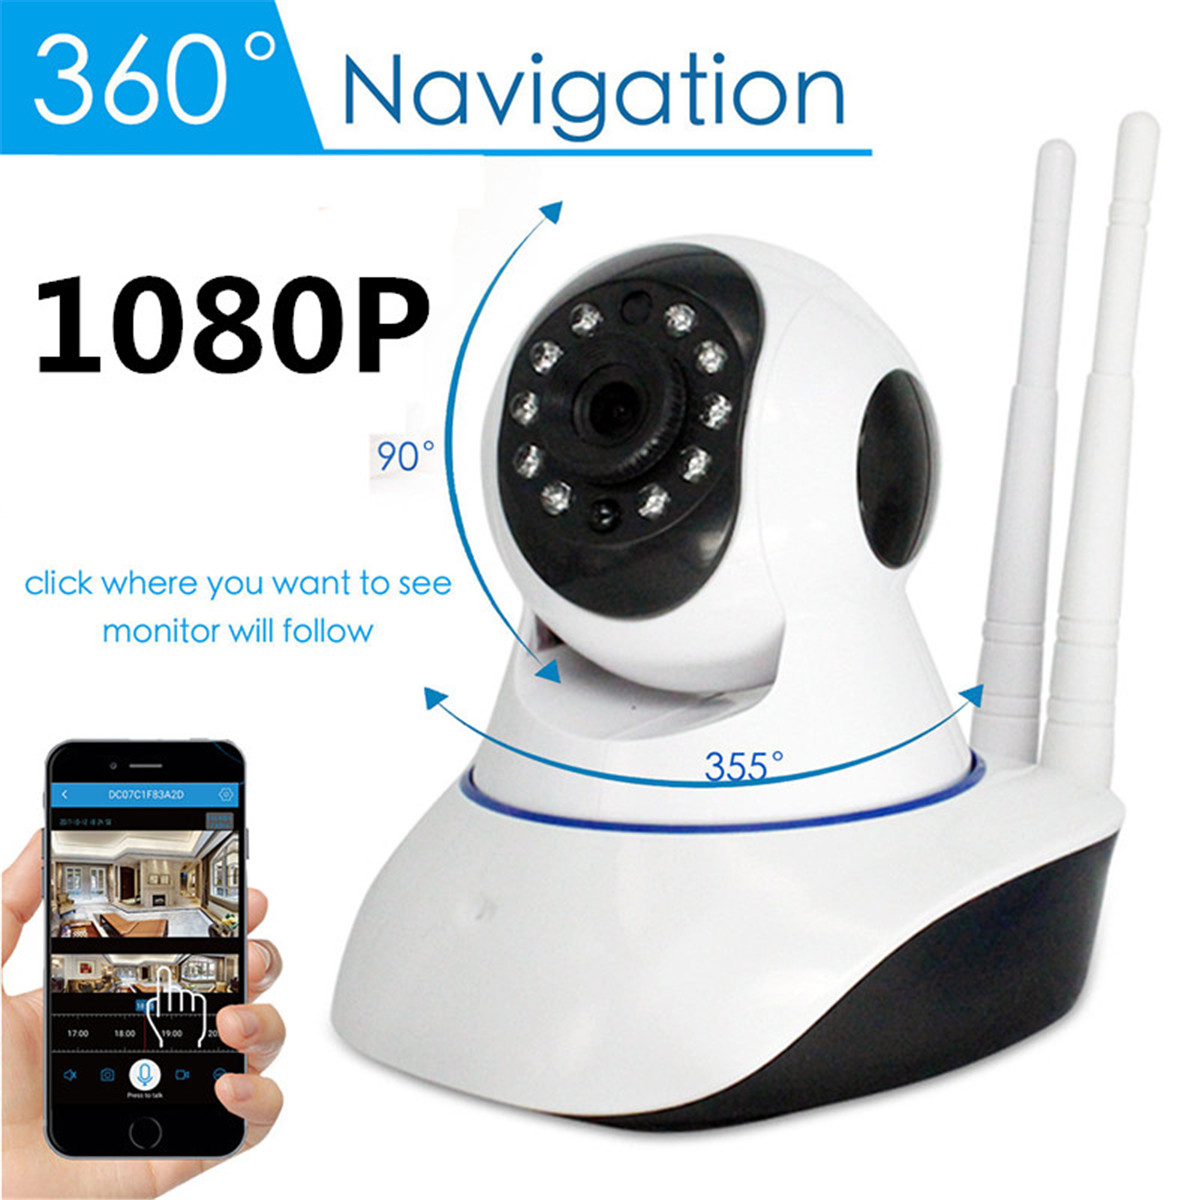 1080P 360° Panoramic Wireless Wifi Security IP Camera Monitor Night Vision CCTV 17